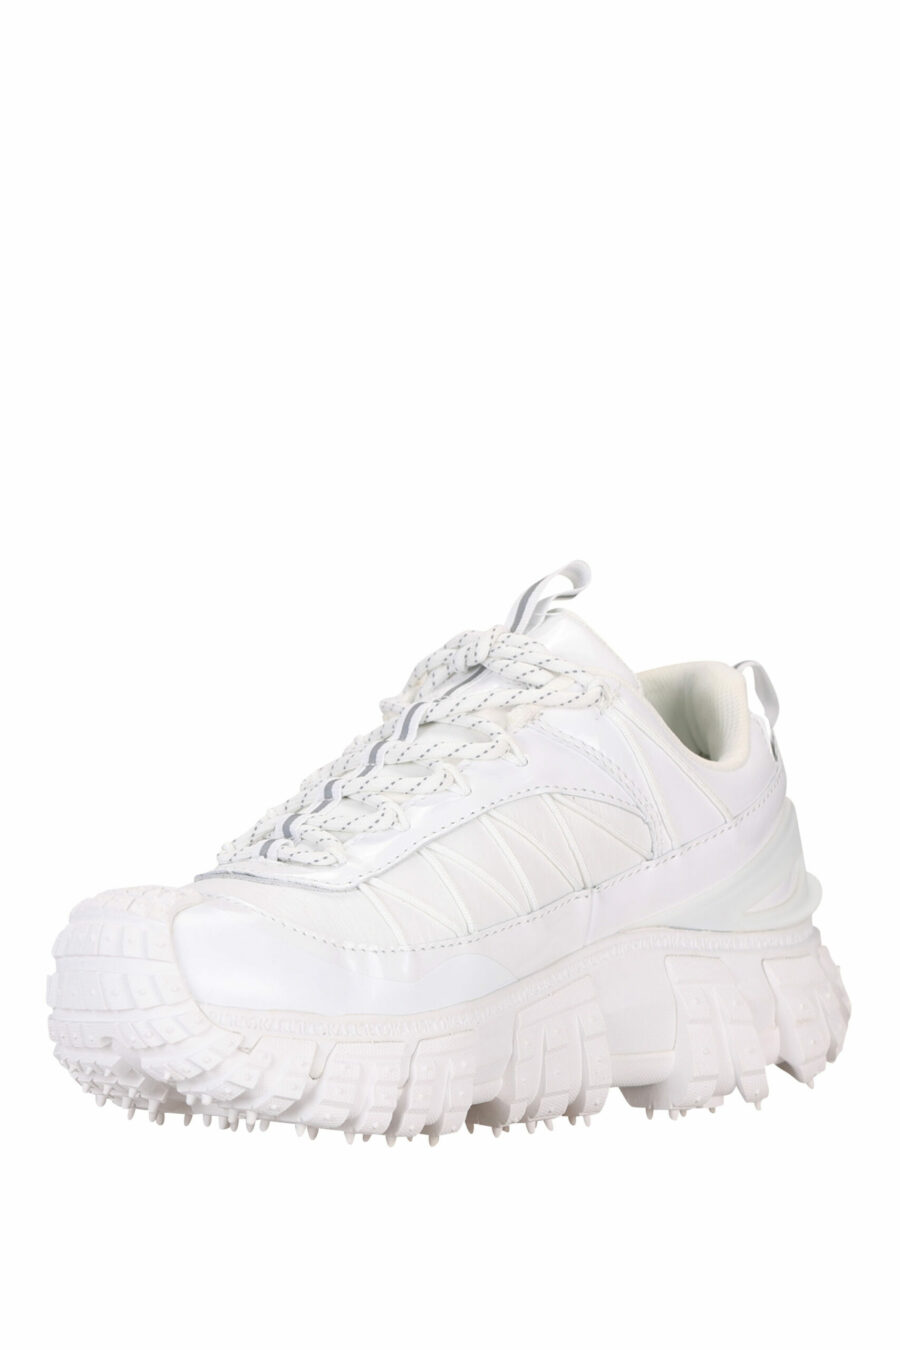 Zapatillas blancas con suela gruesa y minilogo - 5059529319099 3 scaled